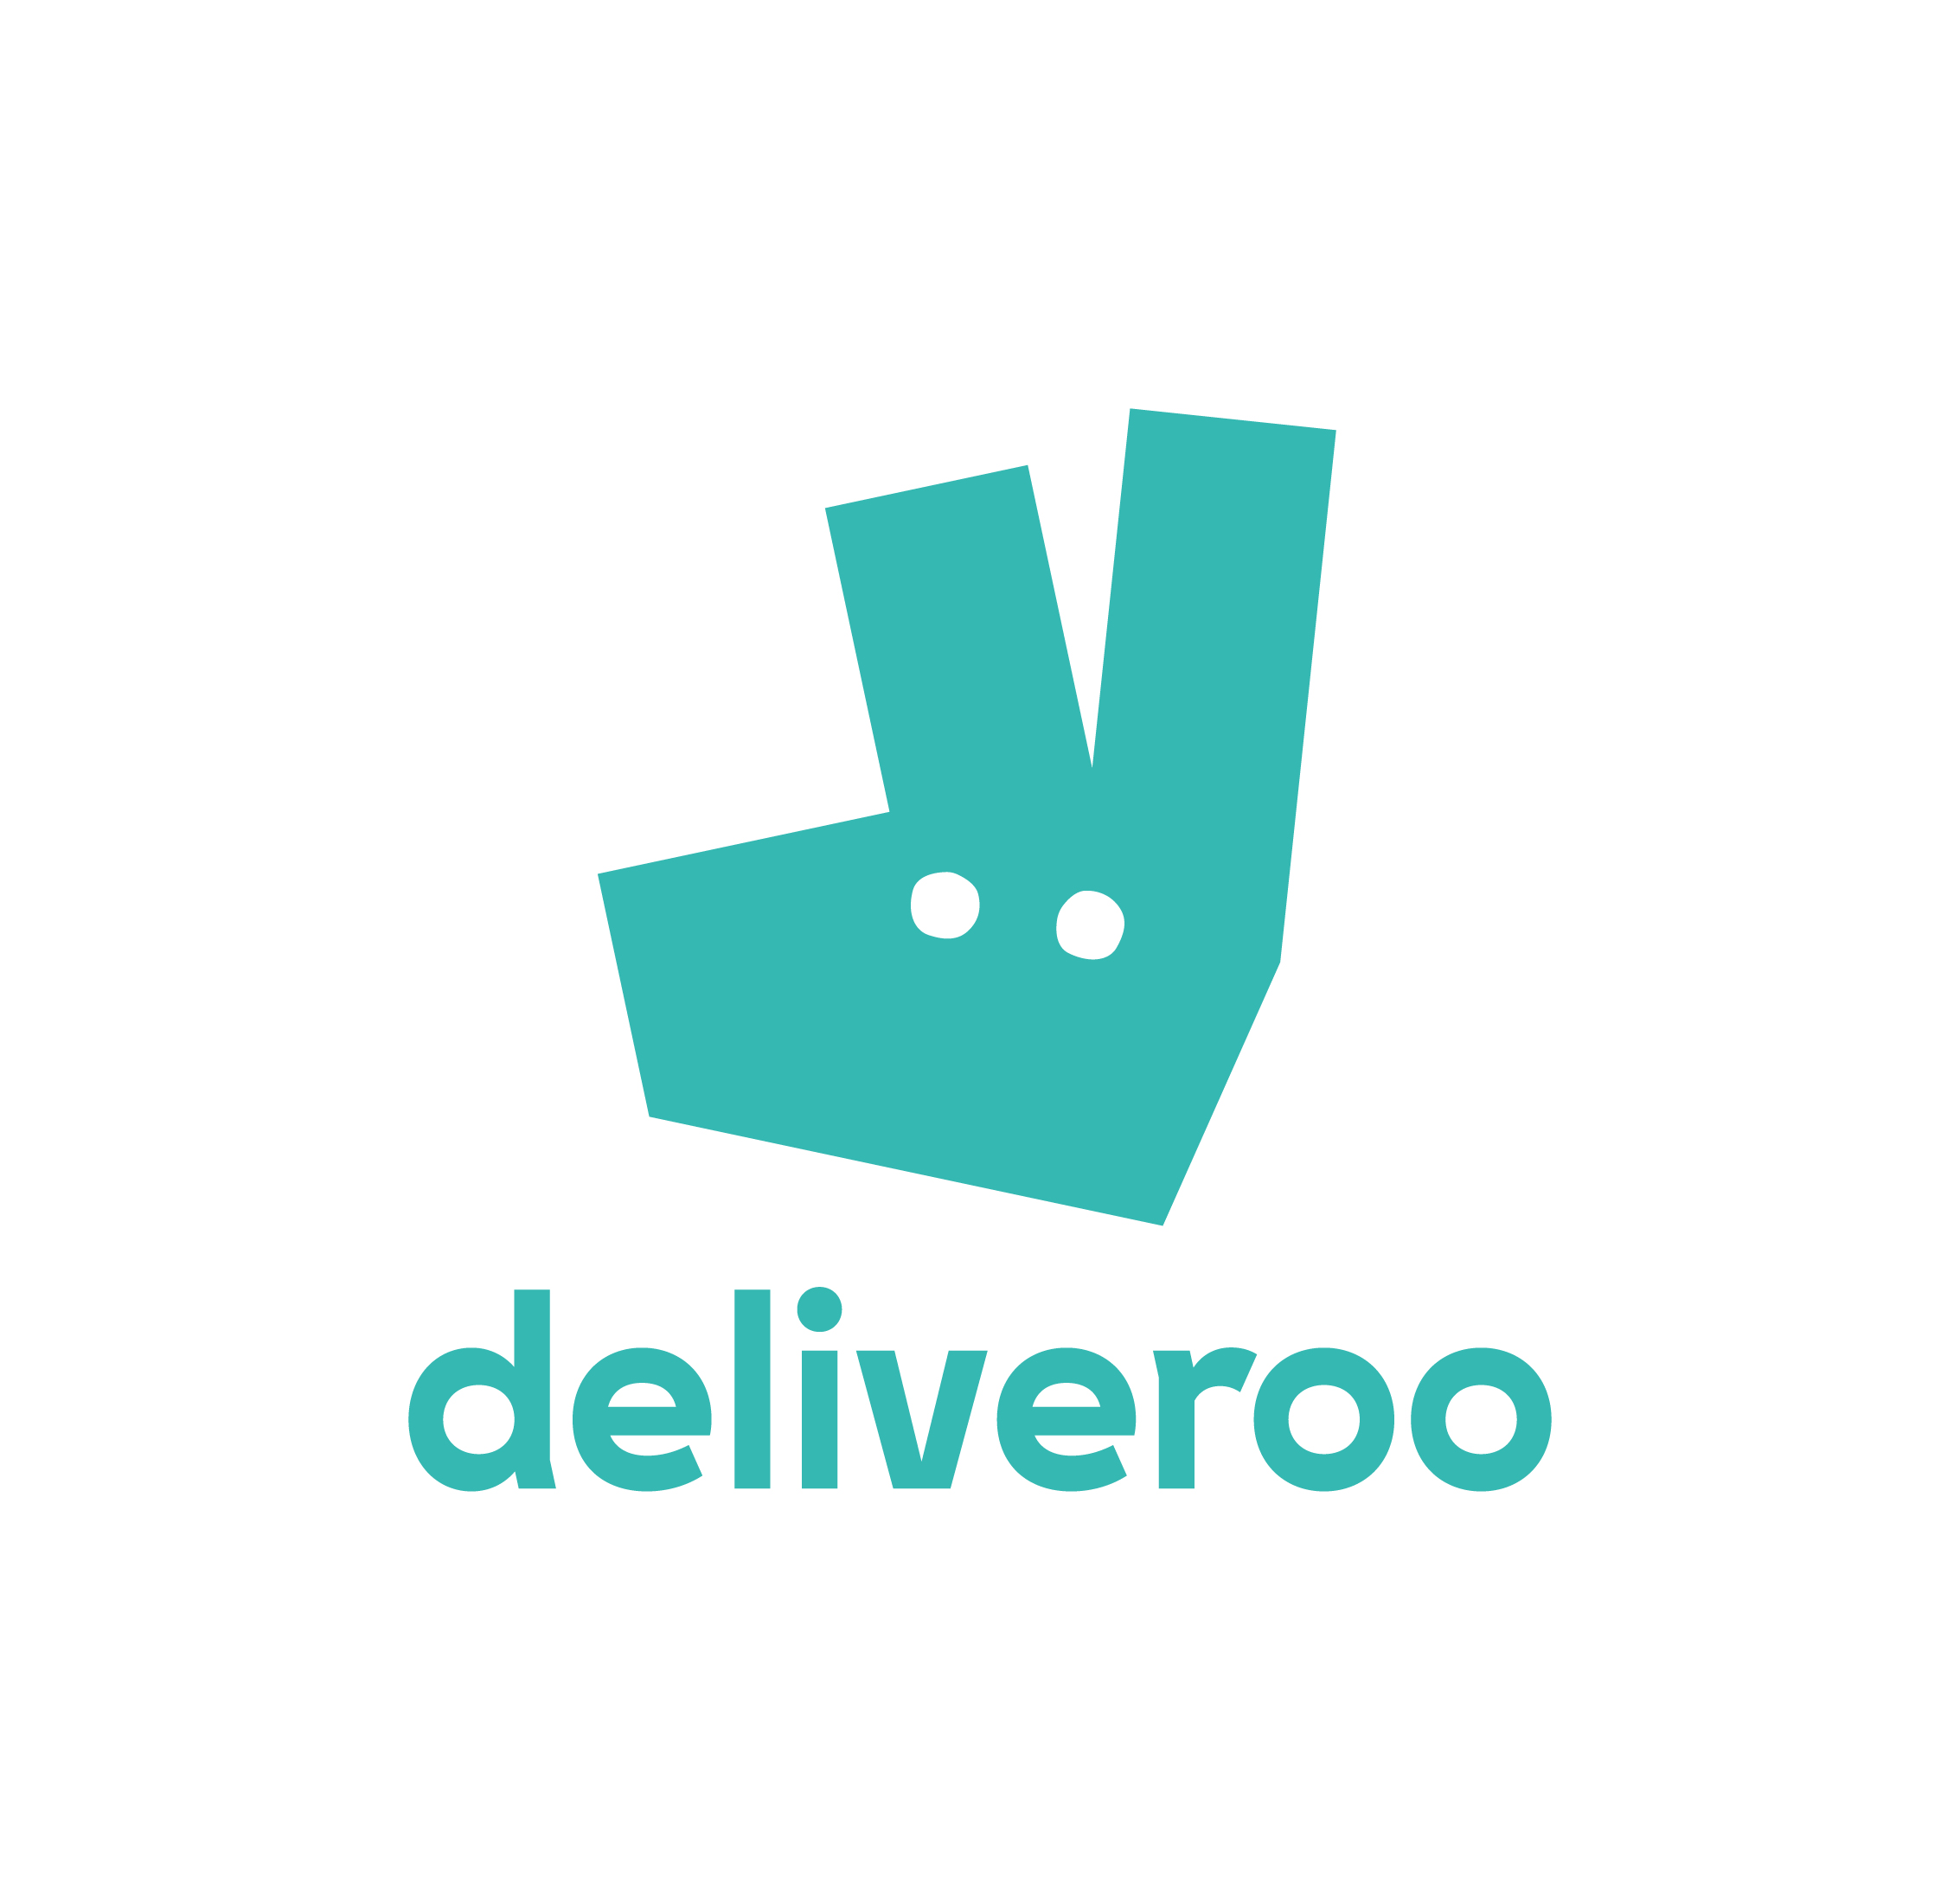 Deliveroo-Logo_Full_CMYK_Teal